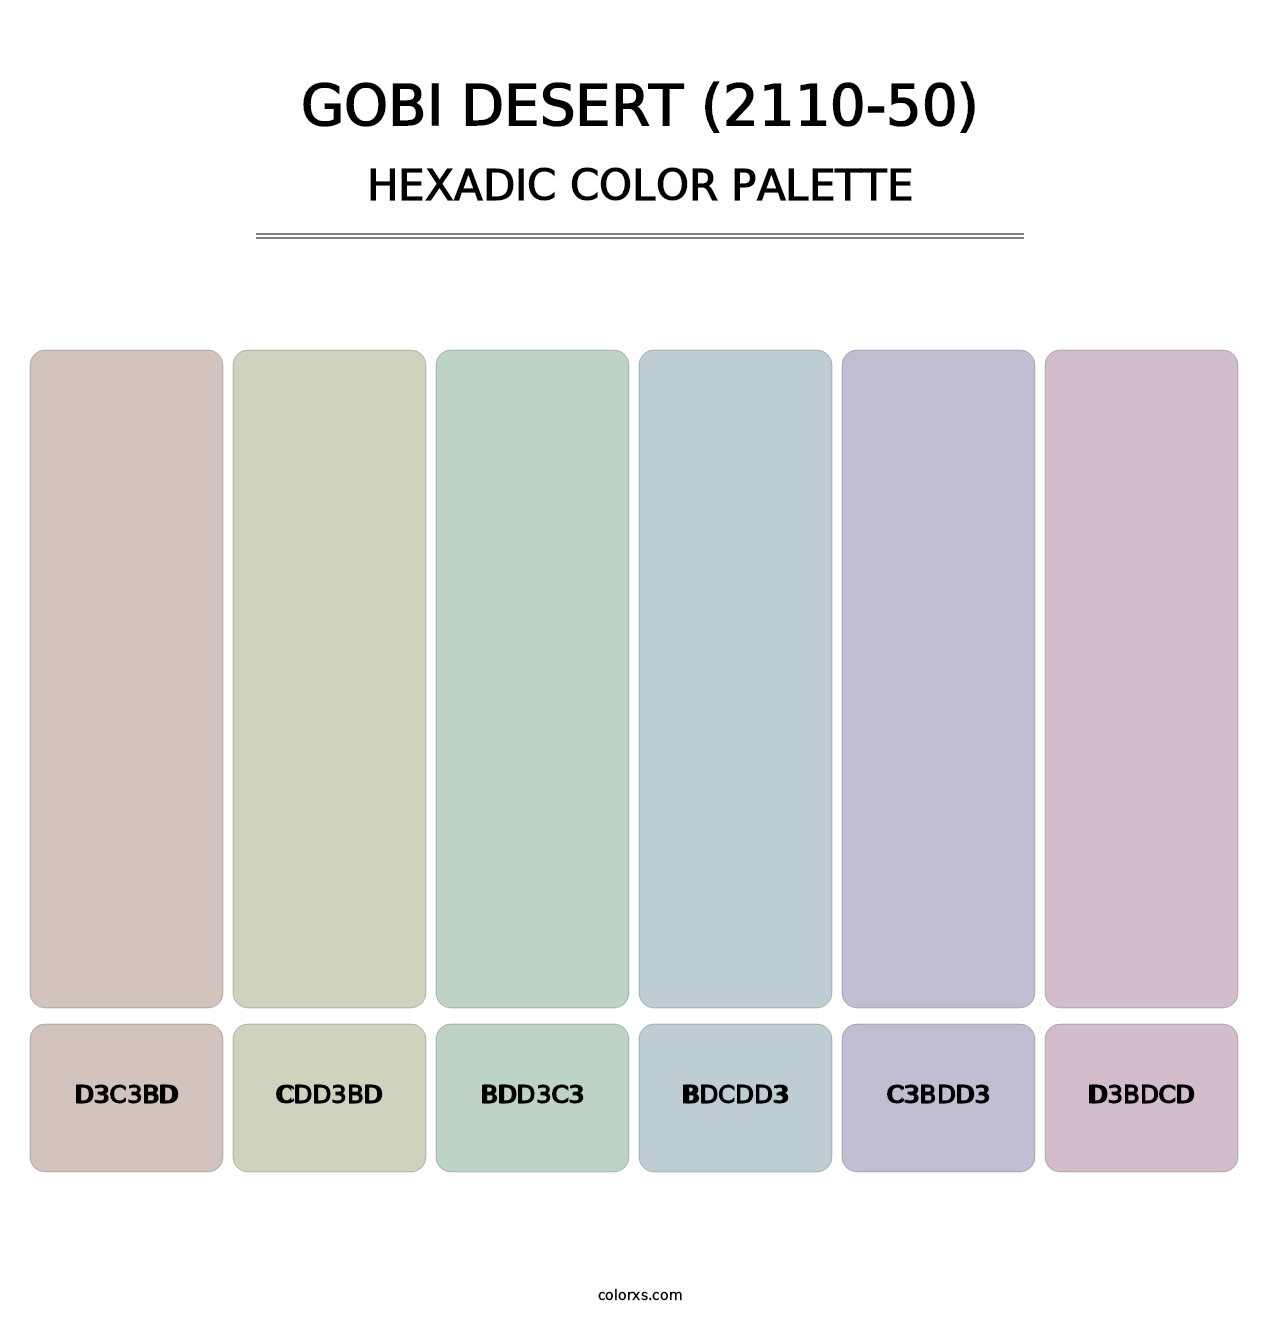 Gobi Desert (2110-50) - Hexadic Color Palette